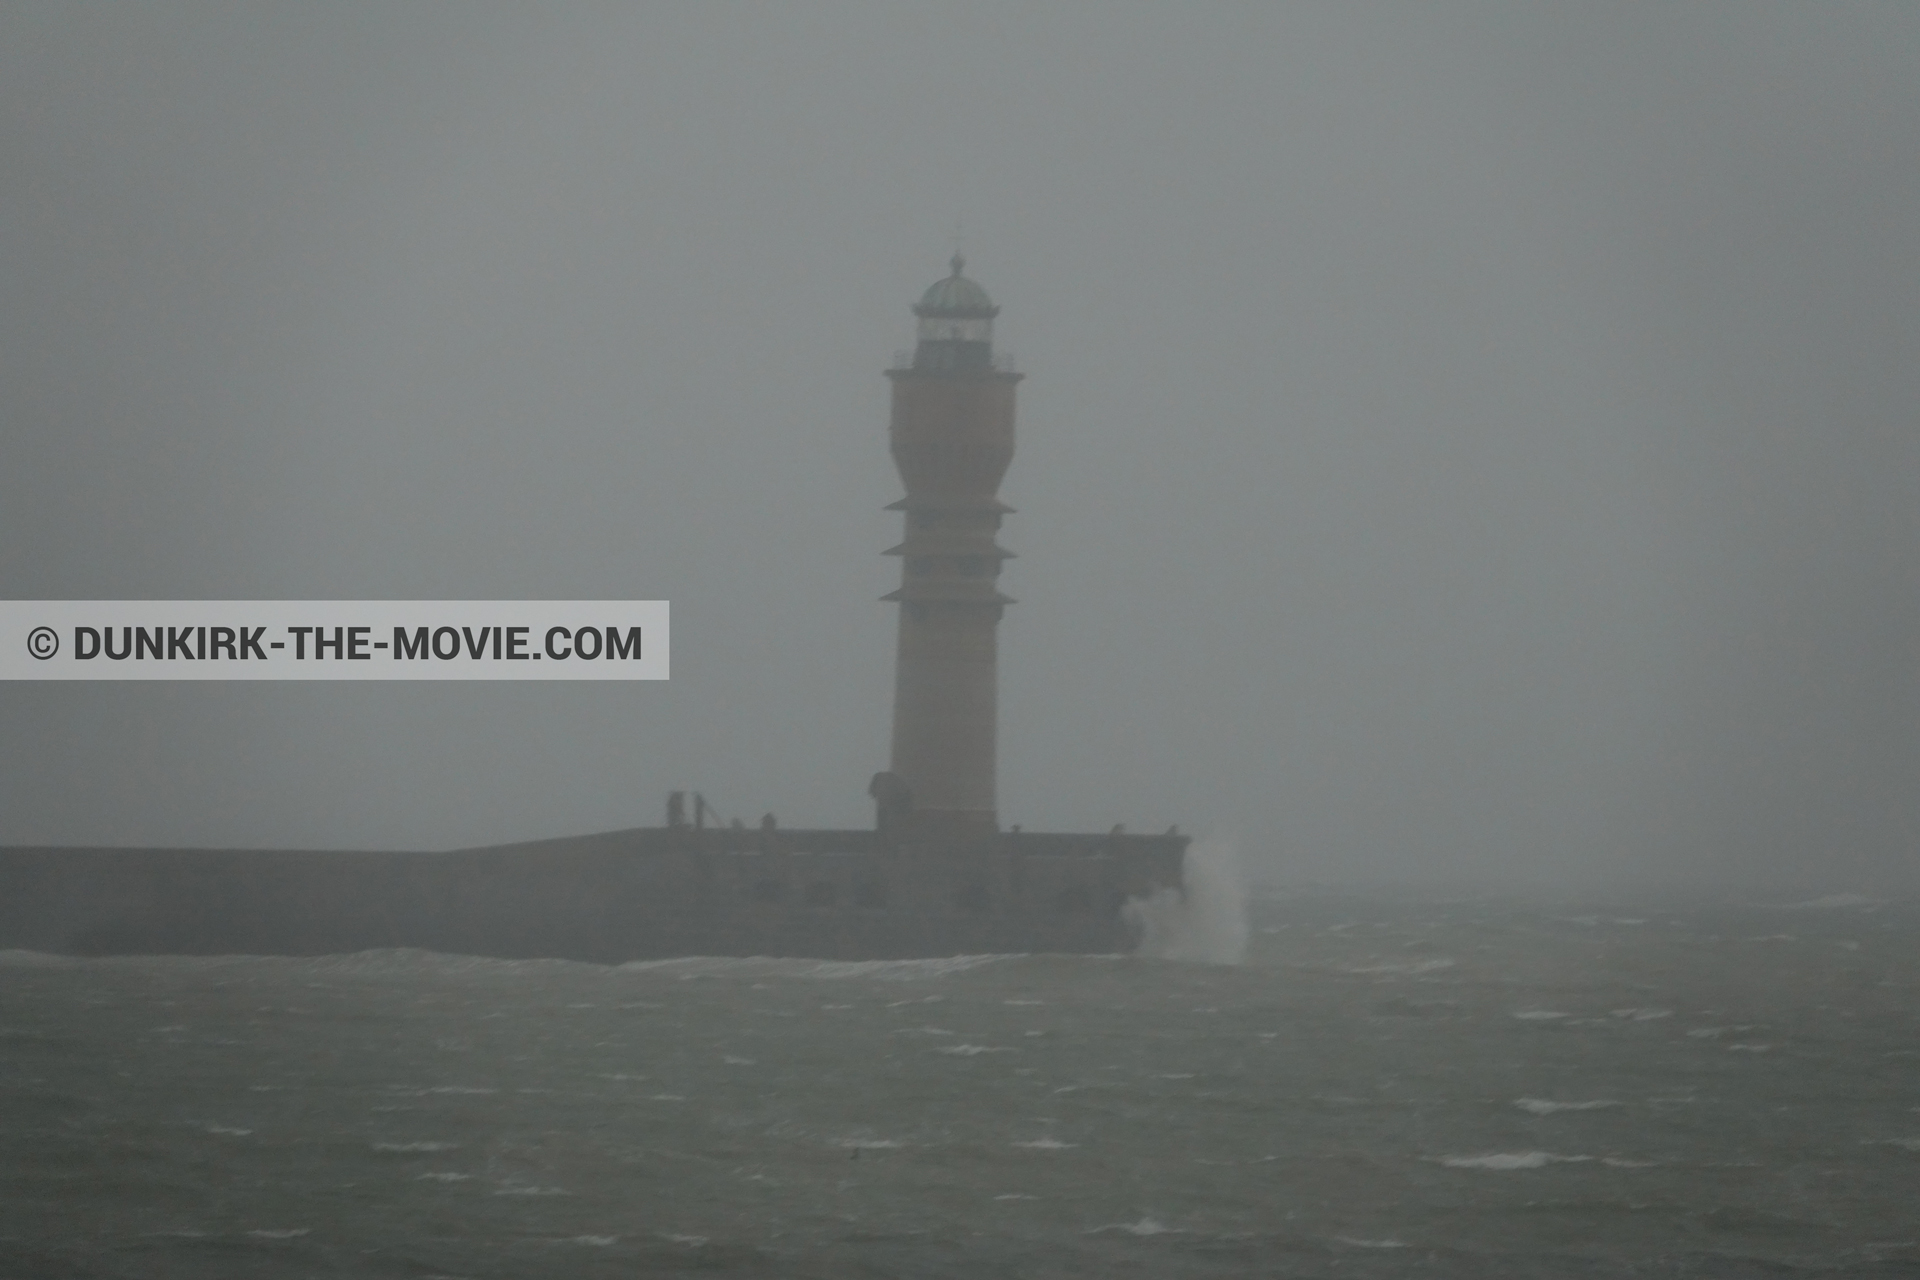 Fotos con cielo gris, mares agitados, faro de Saint-Pol-sur-Mer,  durante el rodaje de la película Dunkerque de Nolan